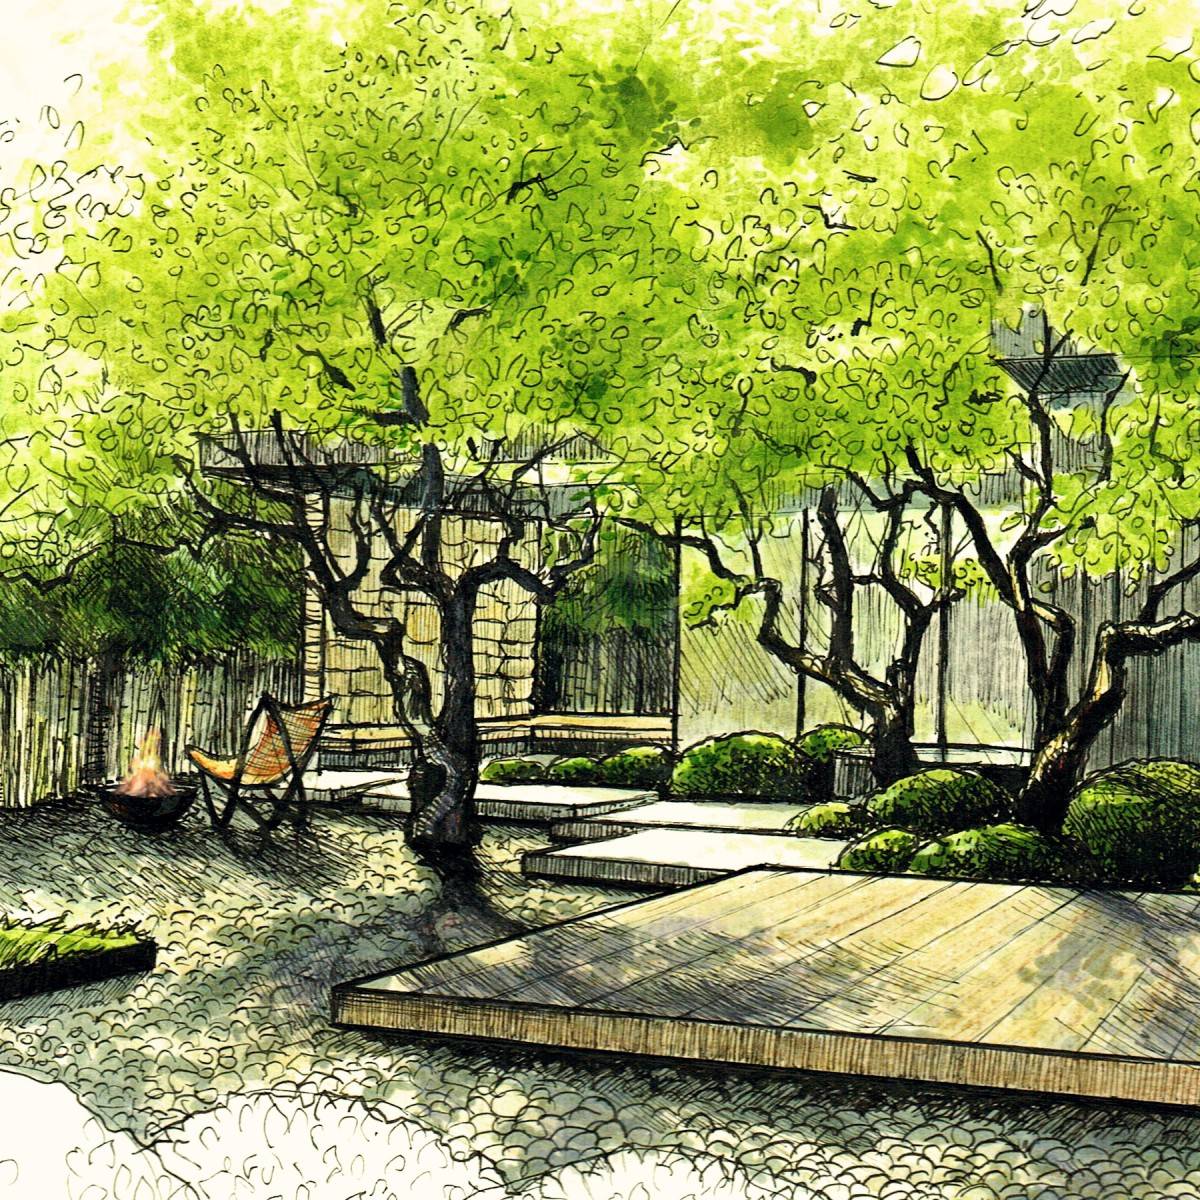 Palo Alto- Zen garden